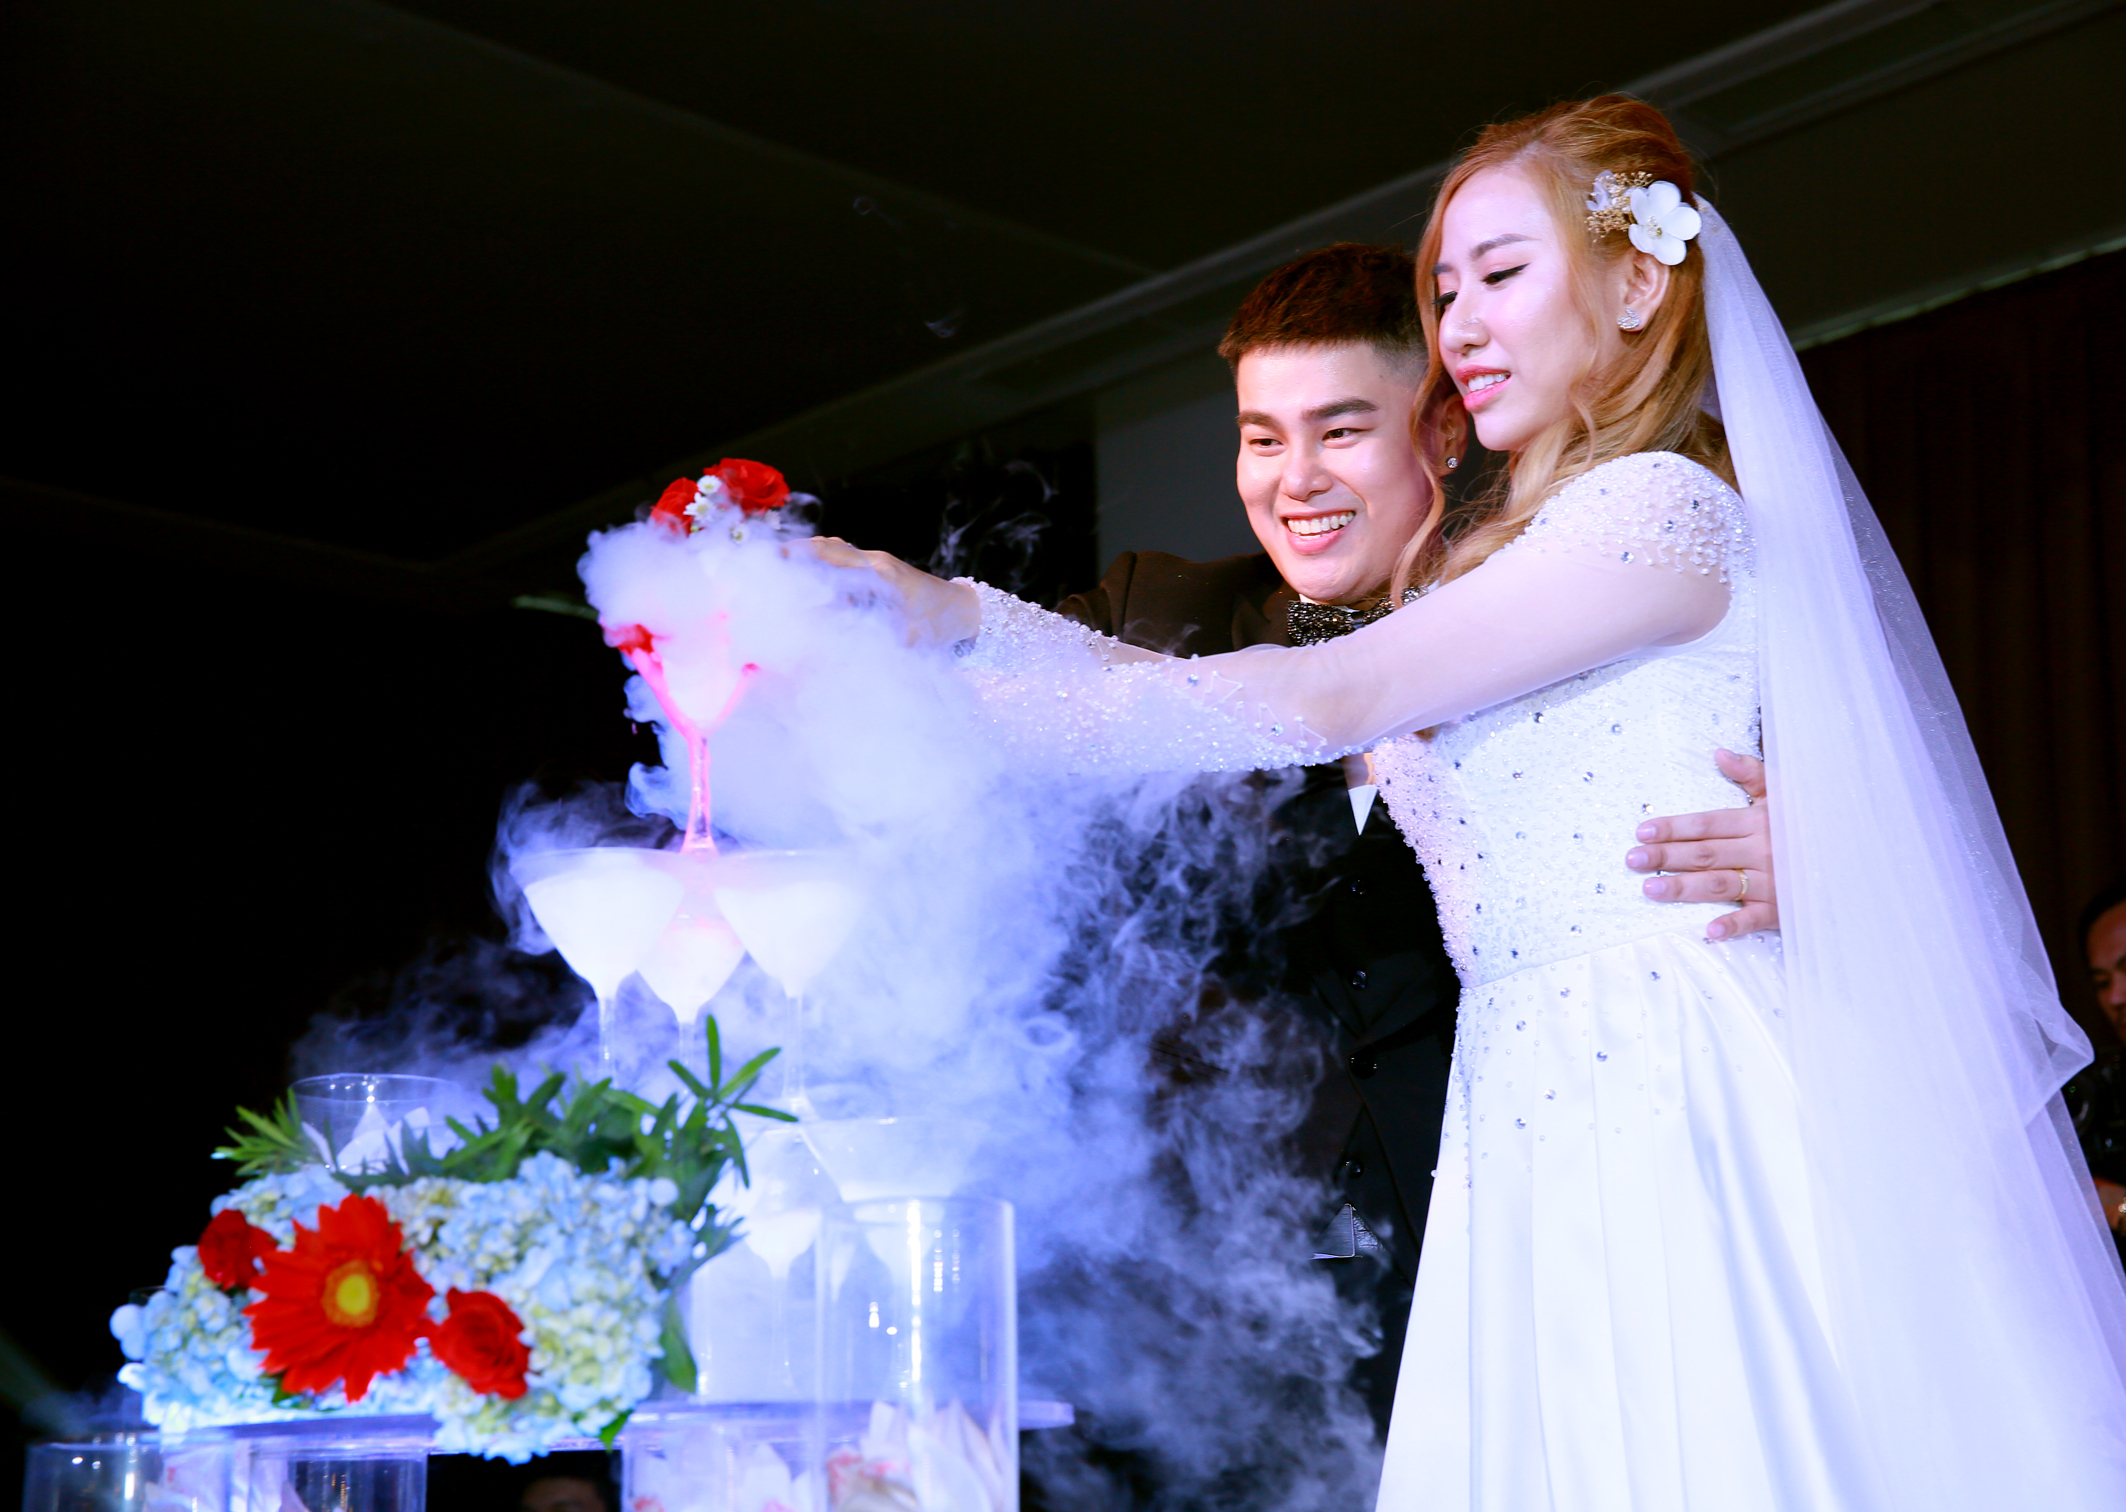 Ca, nhạc sĩ Nguyễn Đình Vũ và bạn gái yêu 8 năm - Ngọc Diệp -&nbsp;vừa tổ chức đám cưới tại một nhà hàng ở TP.HCM.&nbsp;